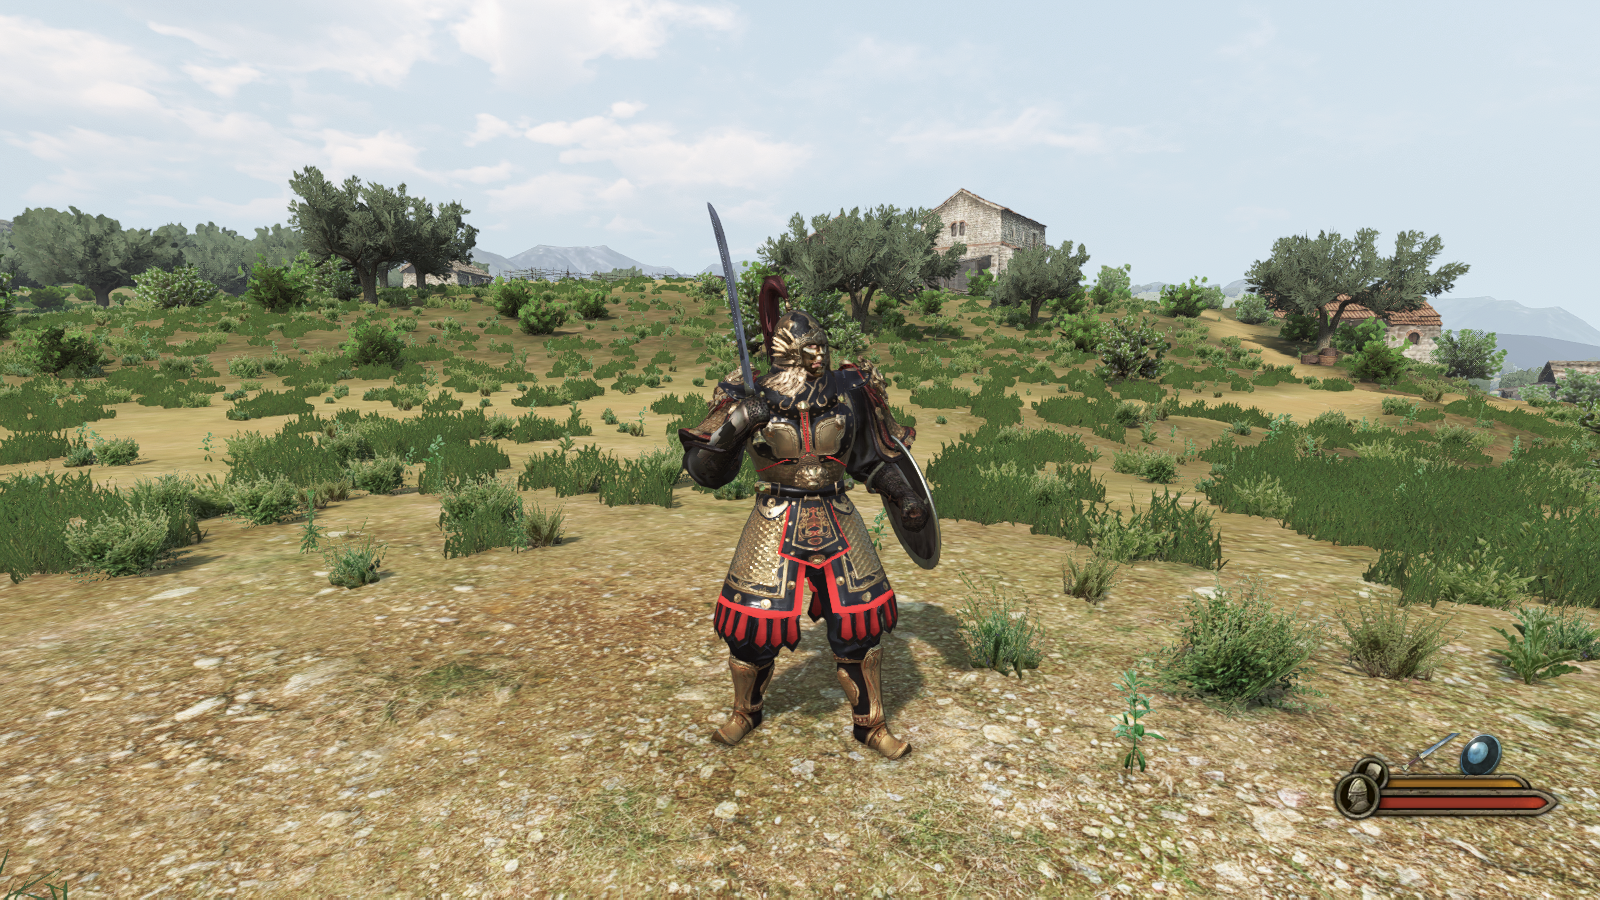 《騎馬與砍殺2》的中國風格甲冑Mod，在很多遊戲中都可以看到有著中國古代風格甲冑的mod作品